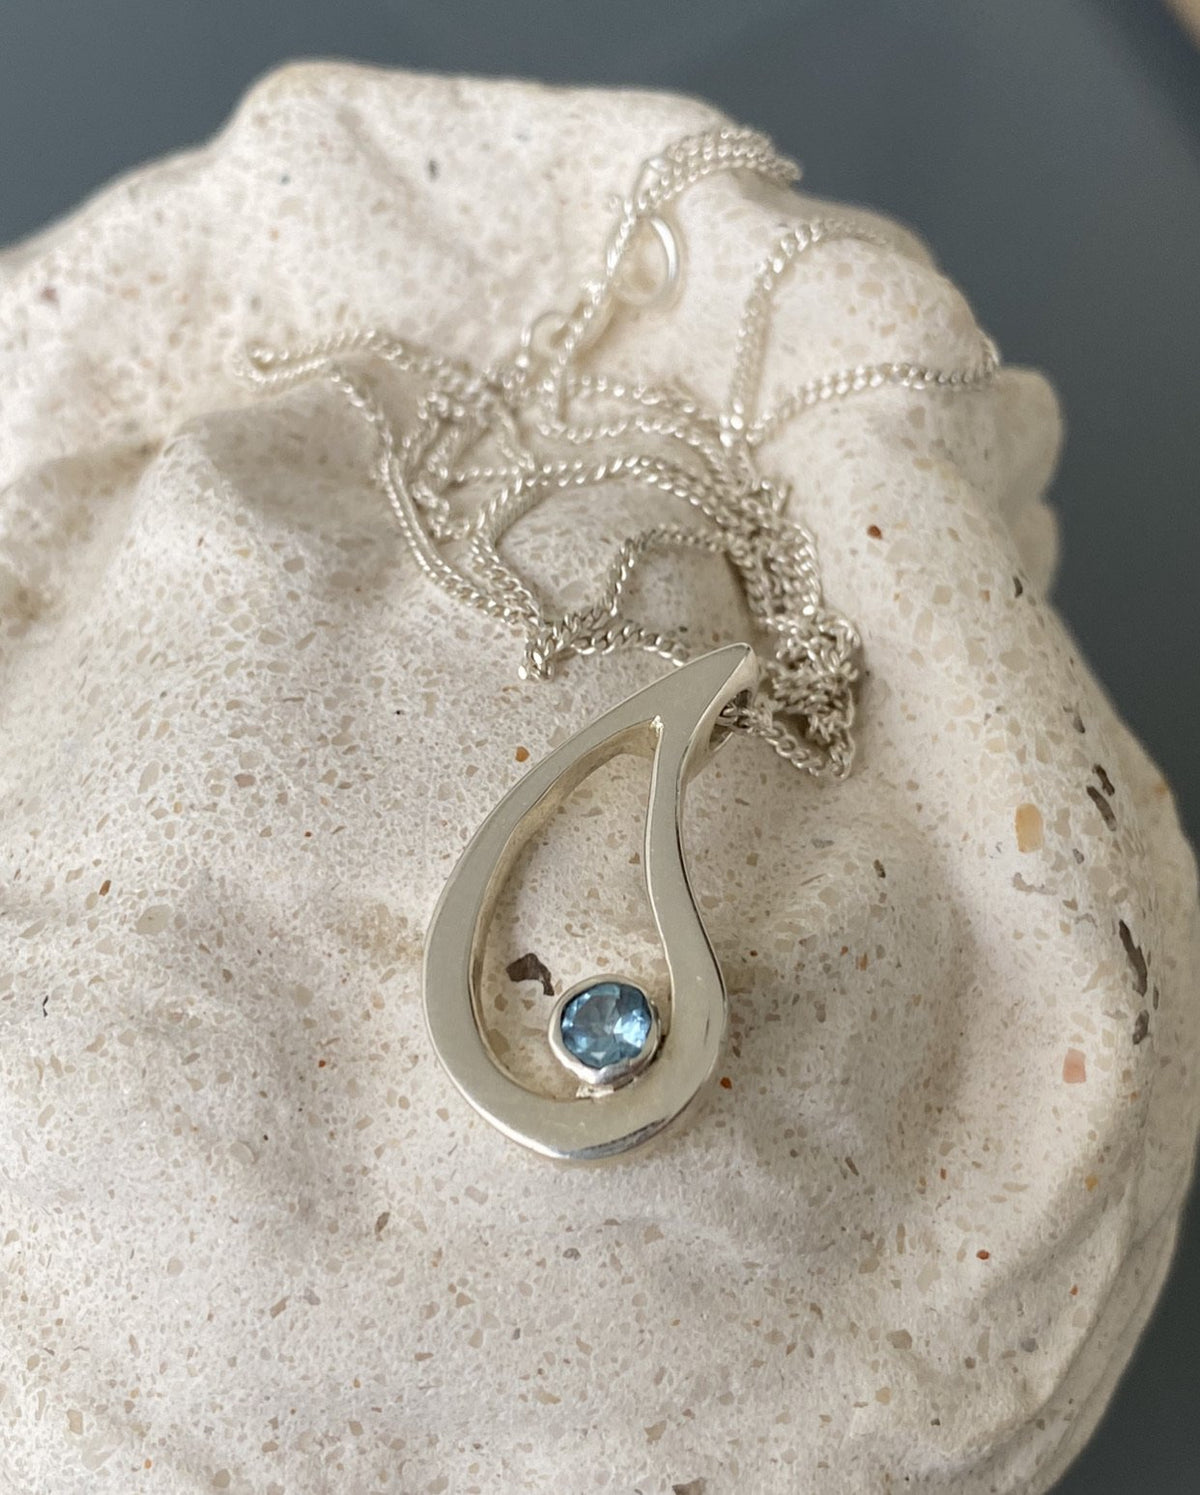 Evil eye pendant, blue topaz pendant, silver eye pendant silver chain